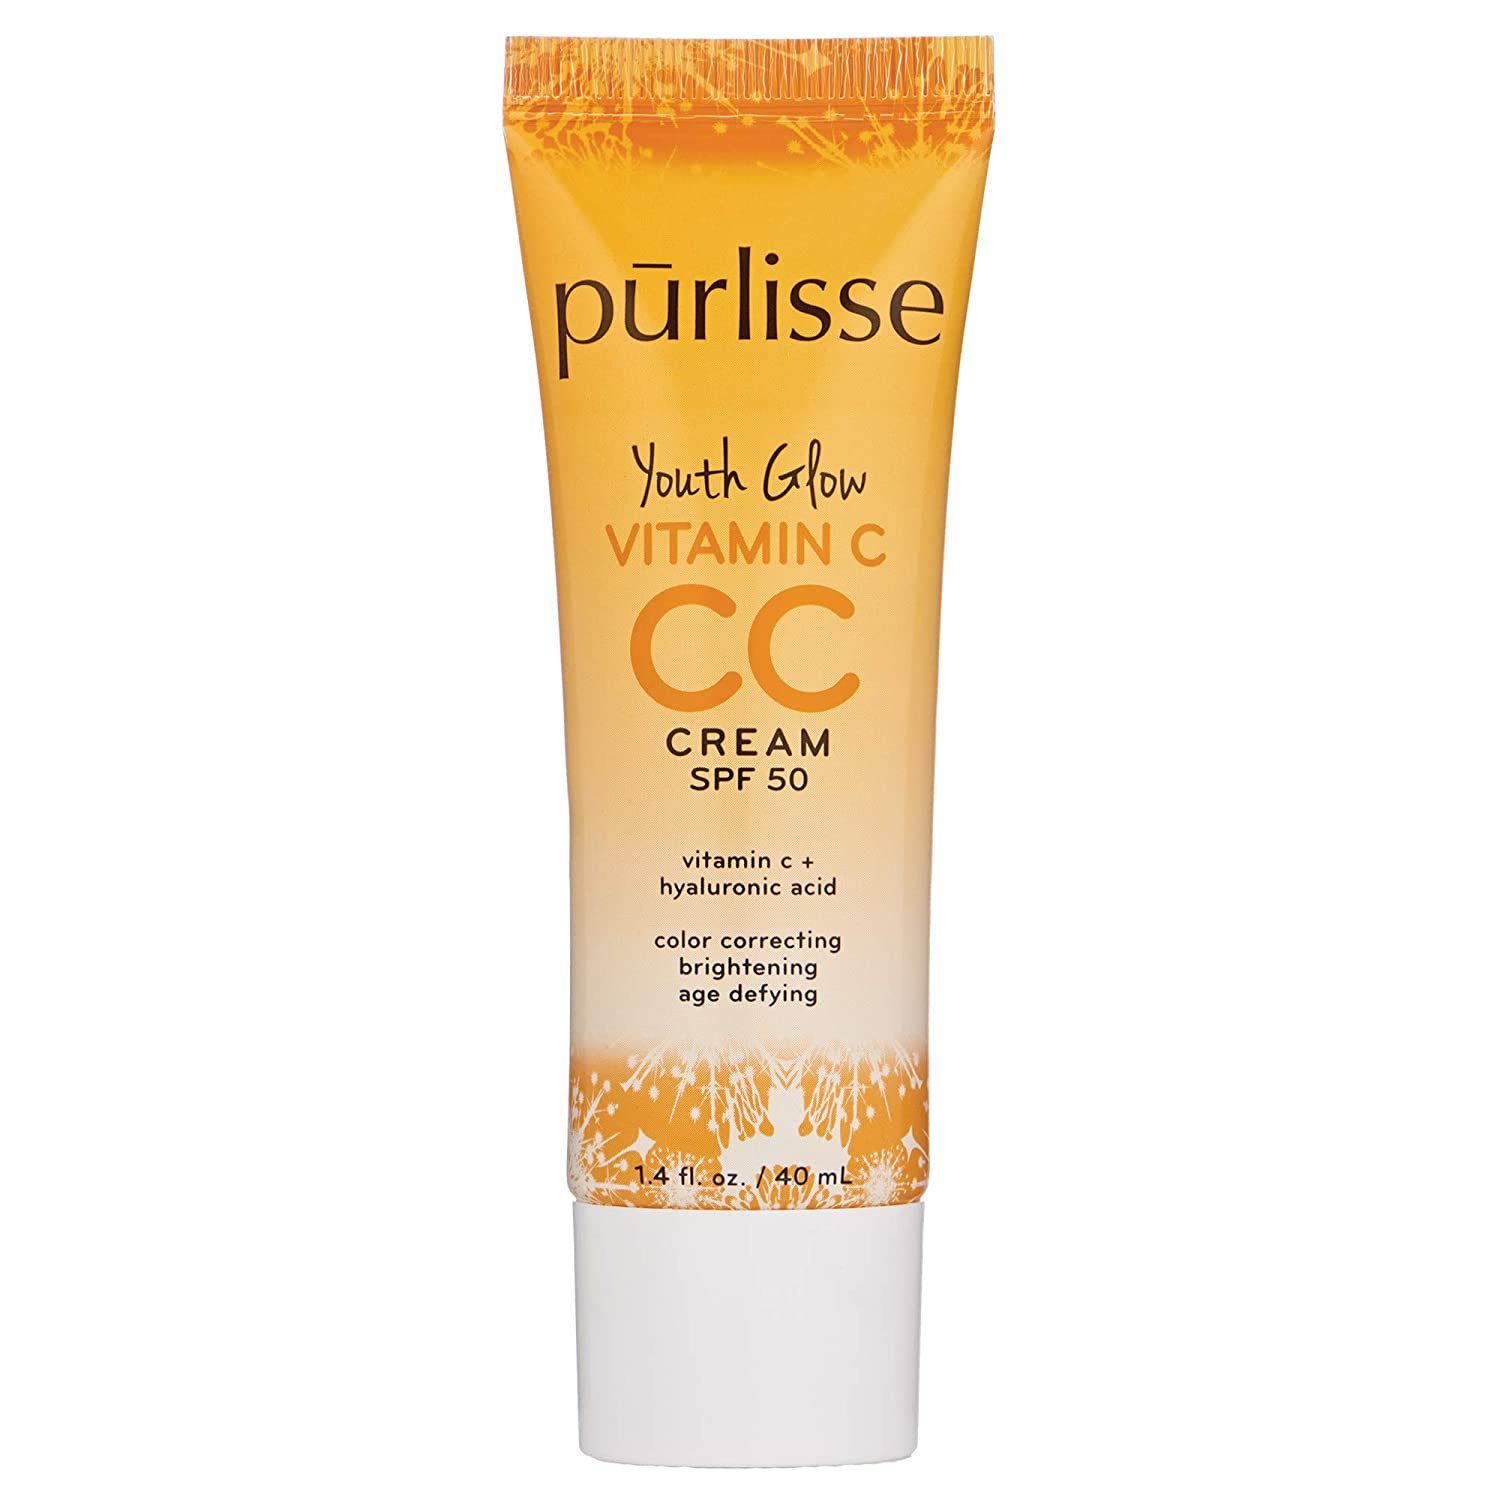 purlisse Youth Glow Vitamin C CC Cream SPF 50